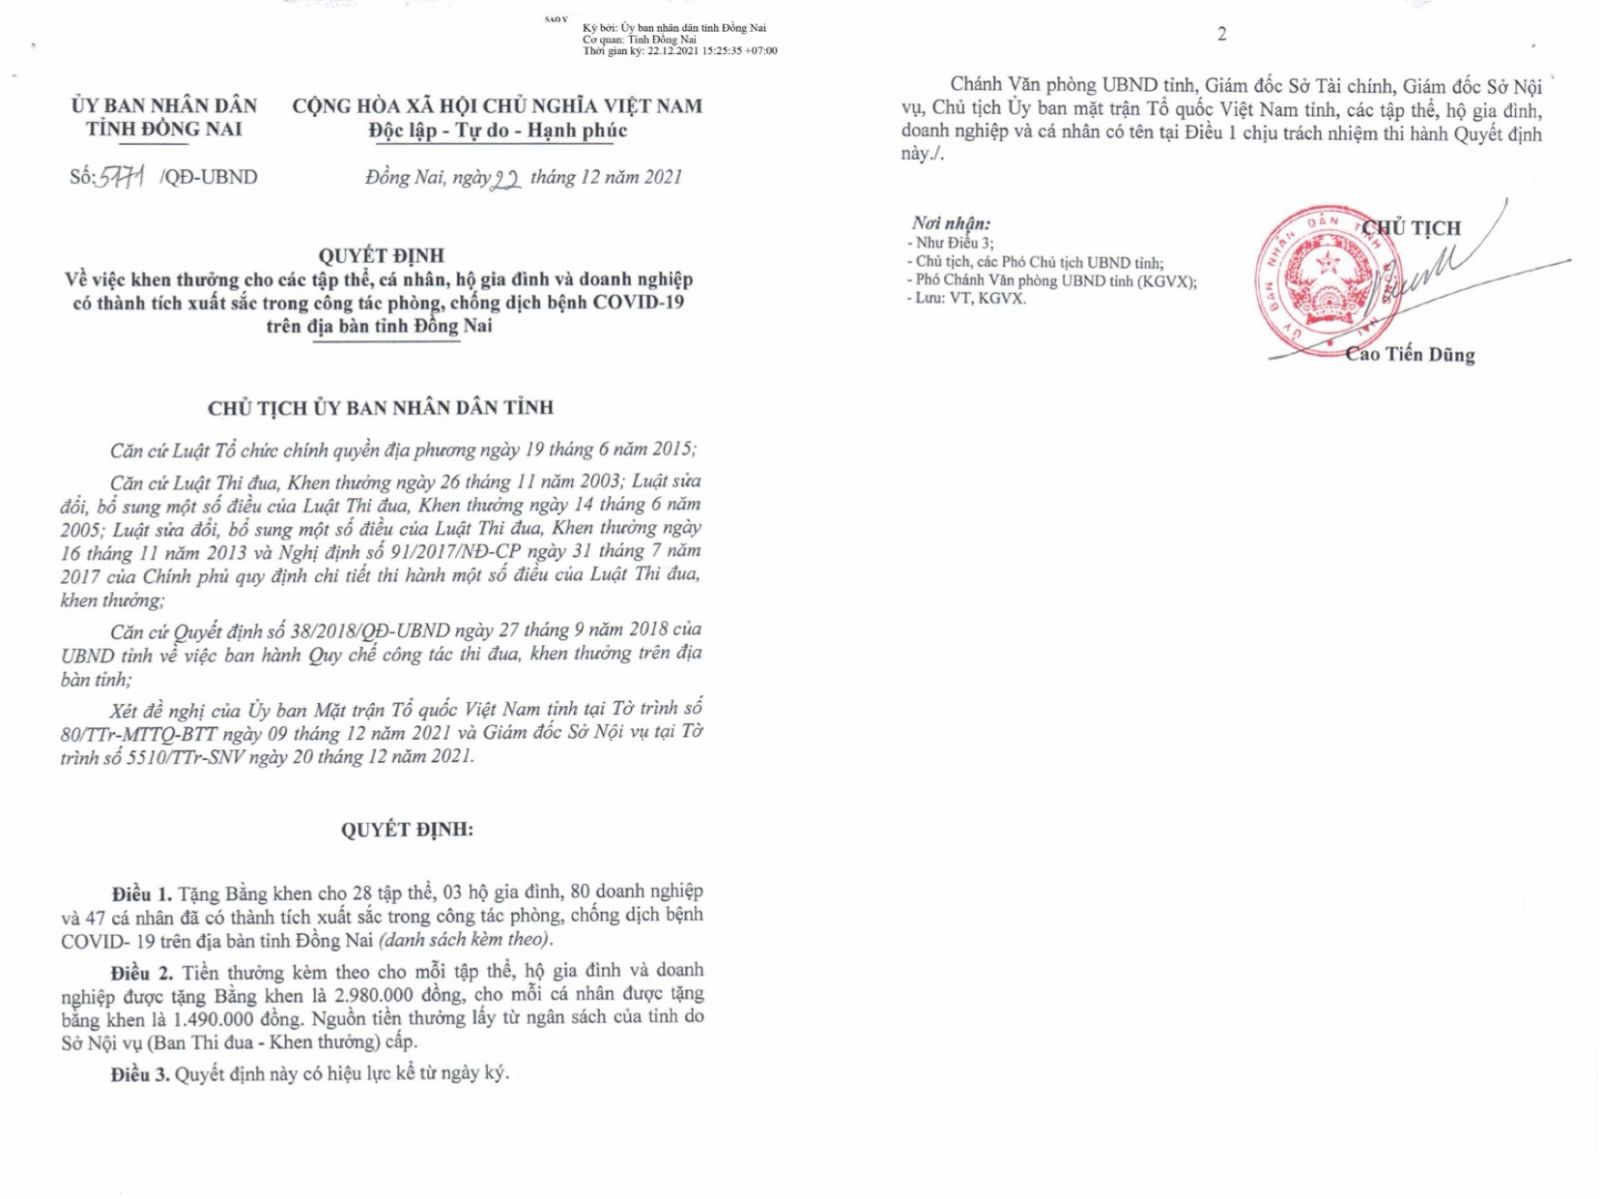 Quyết định số 5171/QĐ-UBND ngày 22/12/2021 của UBND tỉnh Đồng Nai